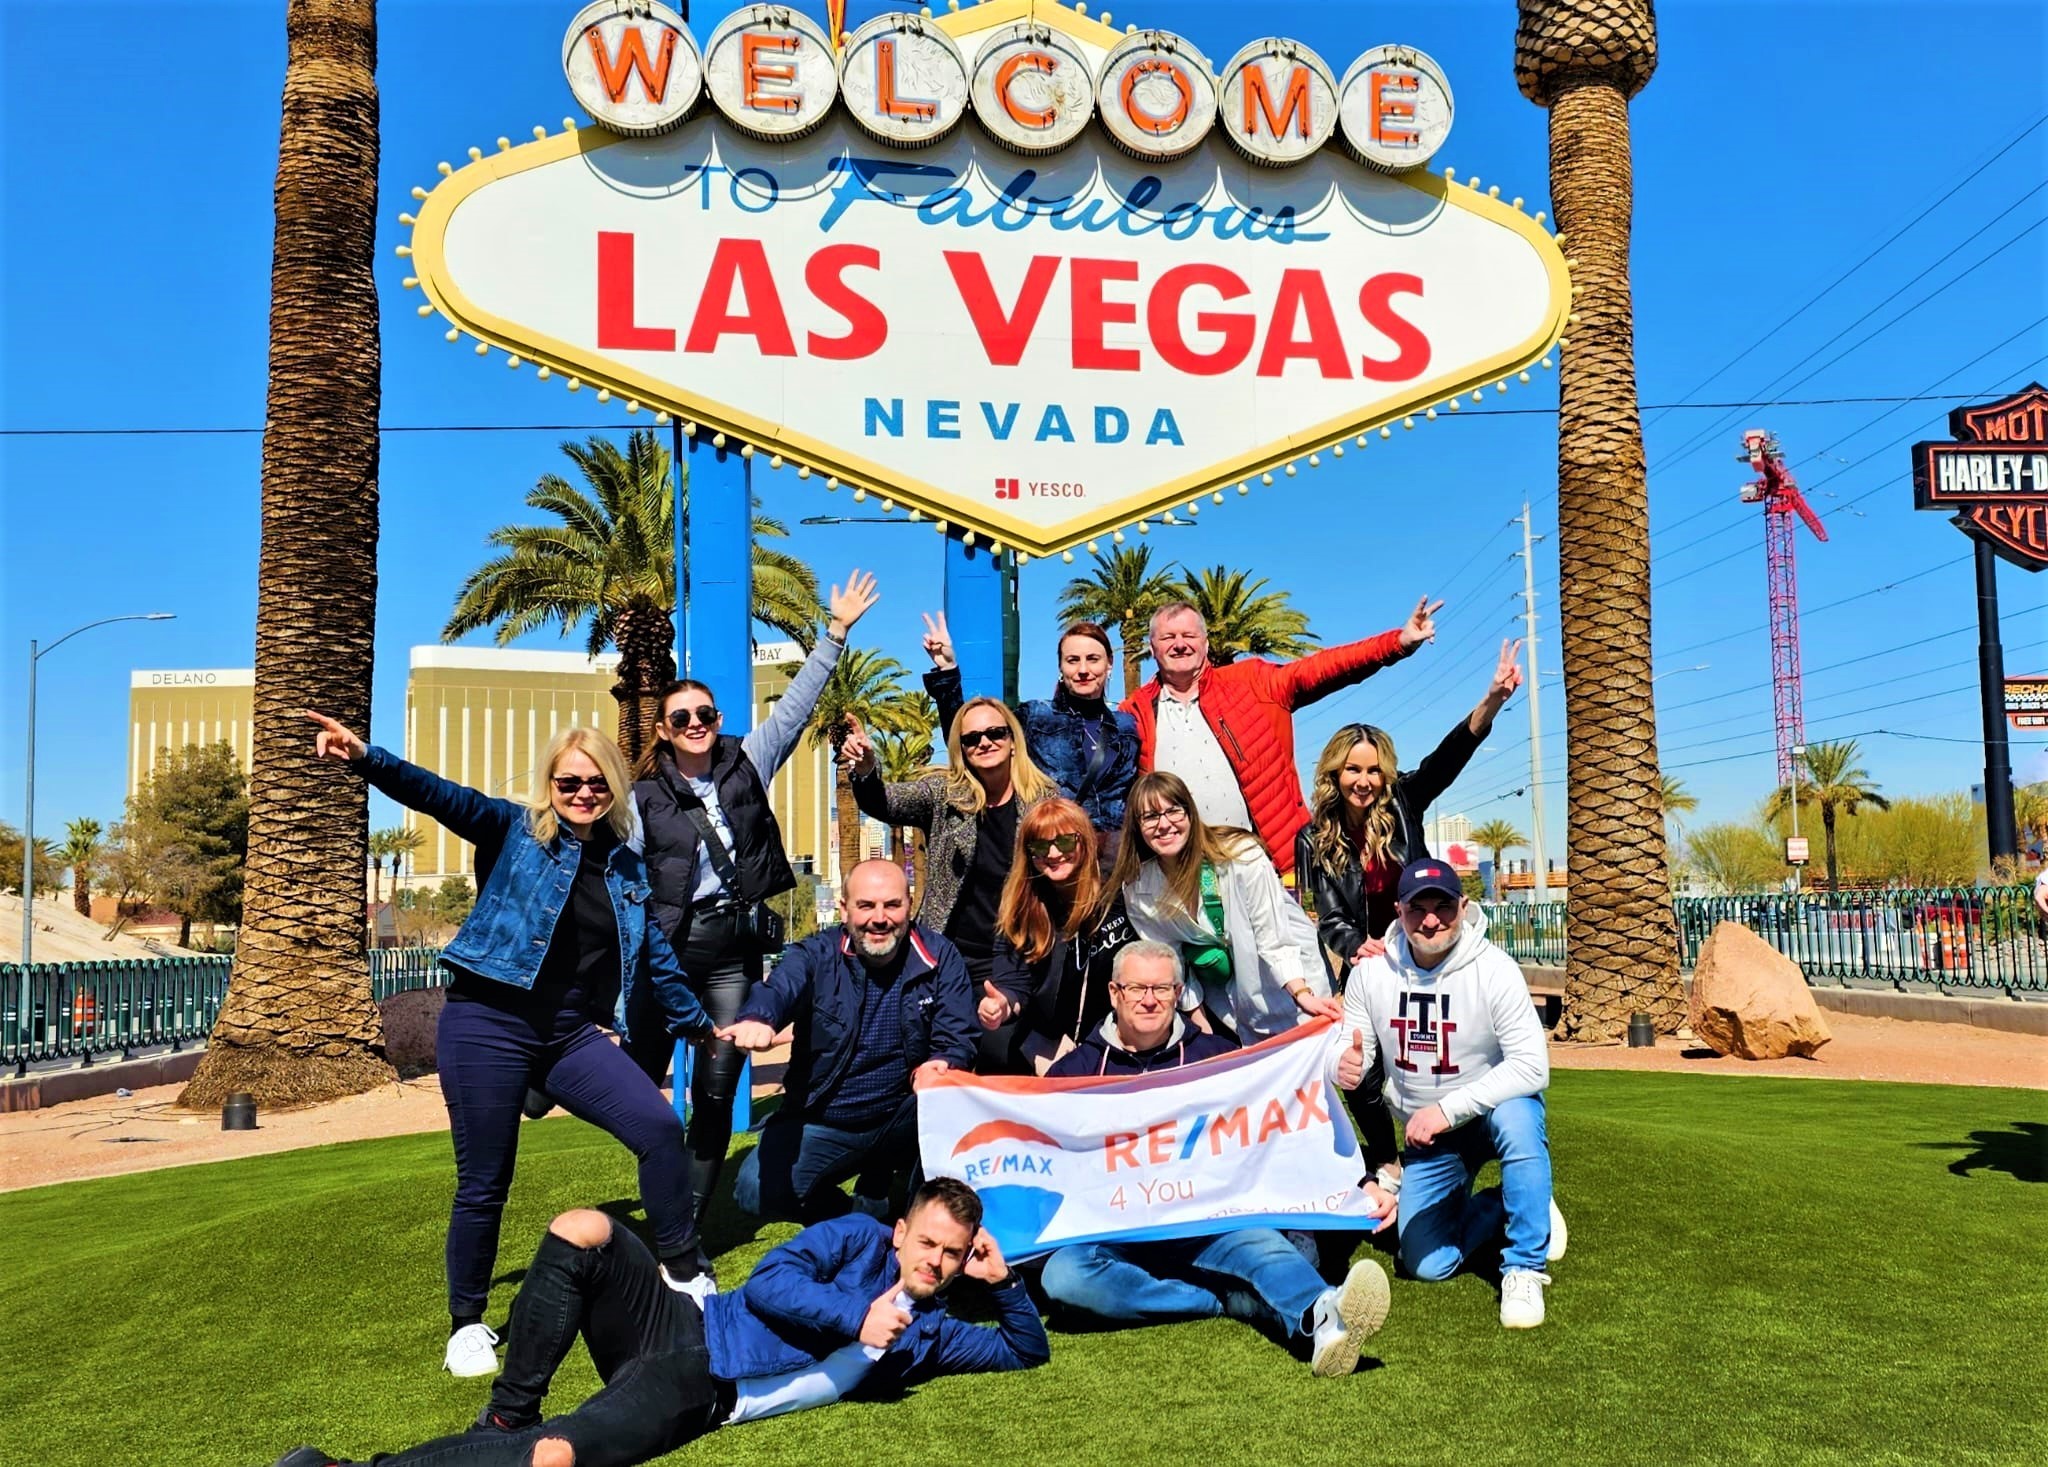 Tým RE/MAX 4 You s kolegy na světové konferenci v Las Vegas.